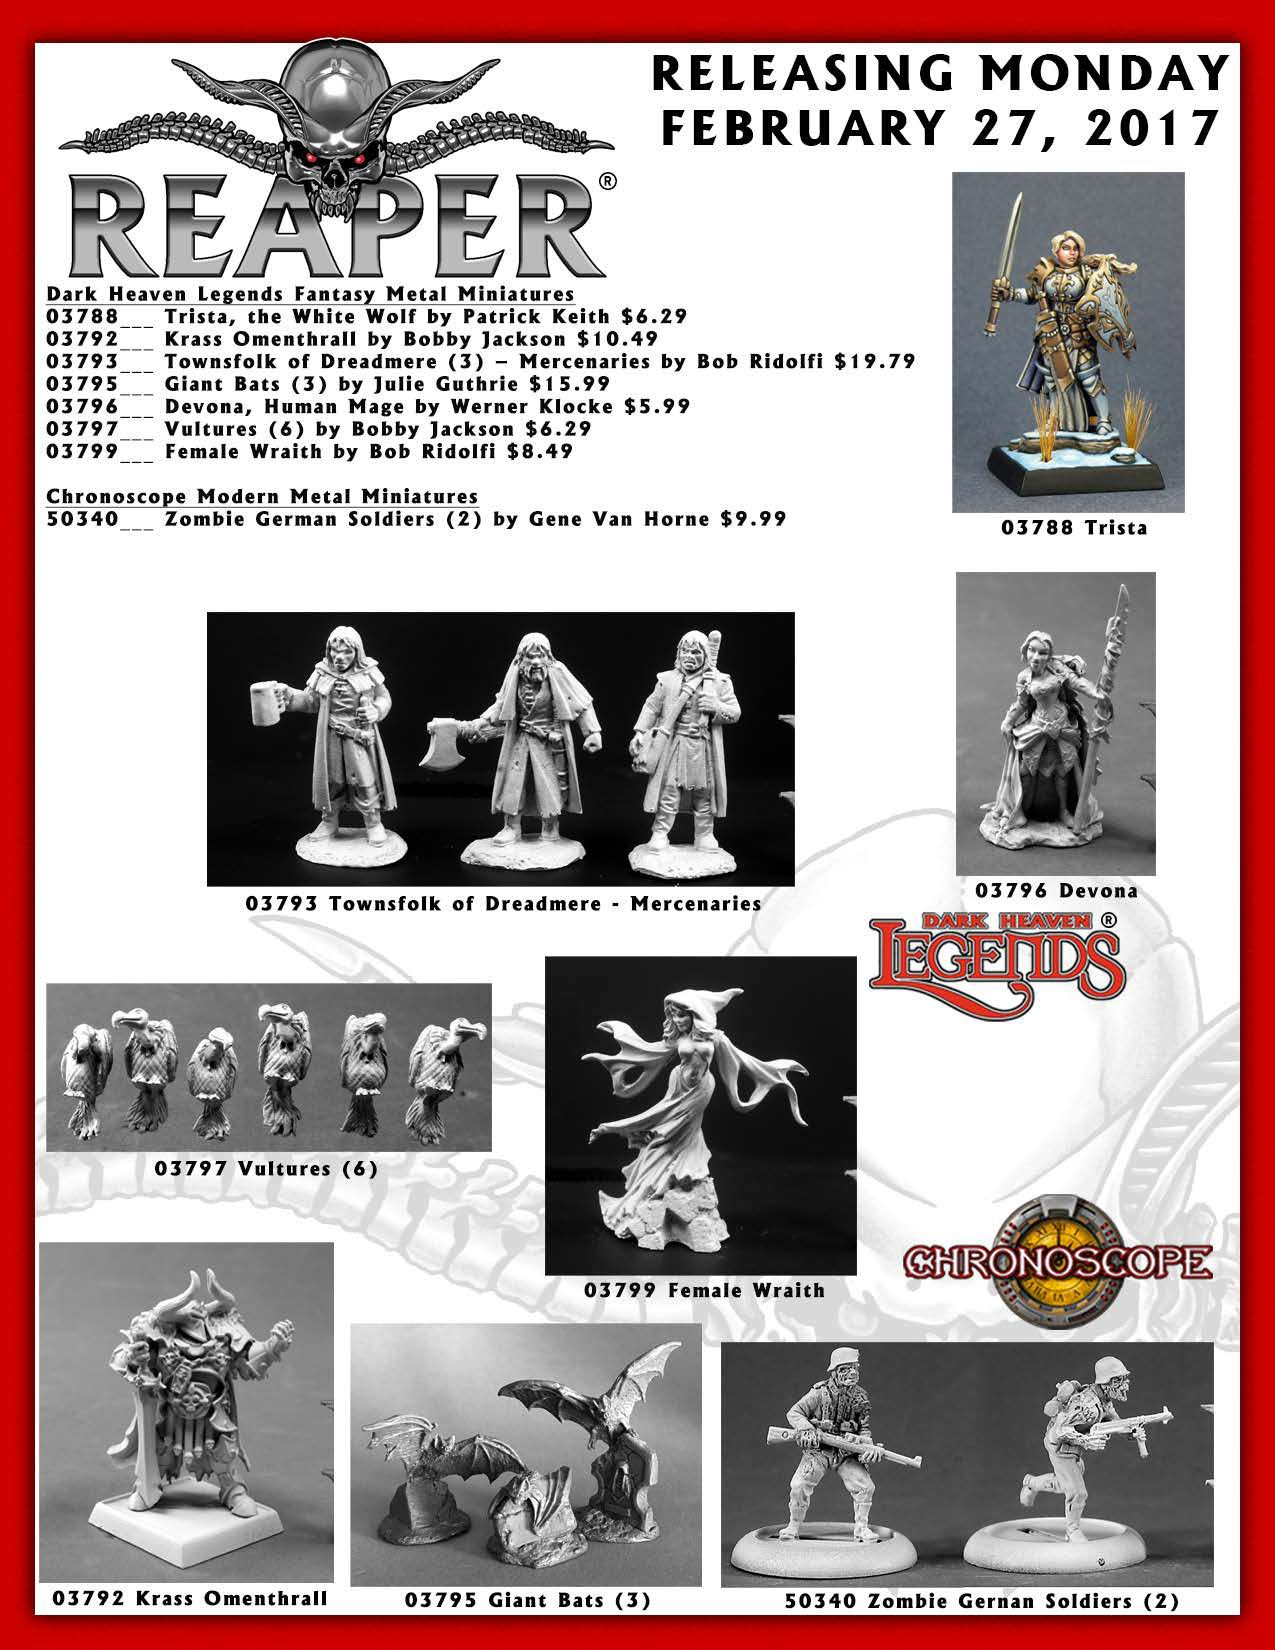 Dark Heaven Legends Reaper 03796 Devona Human Mage 